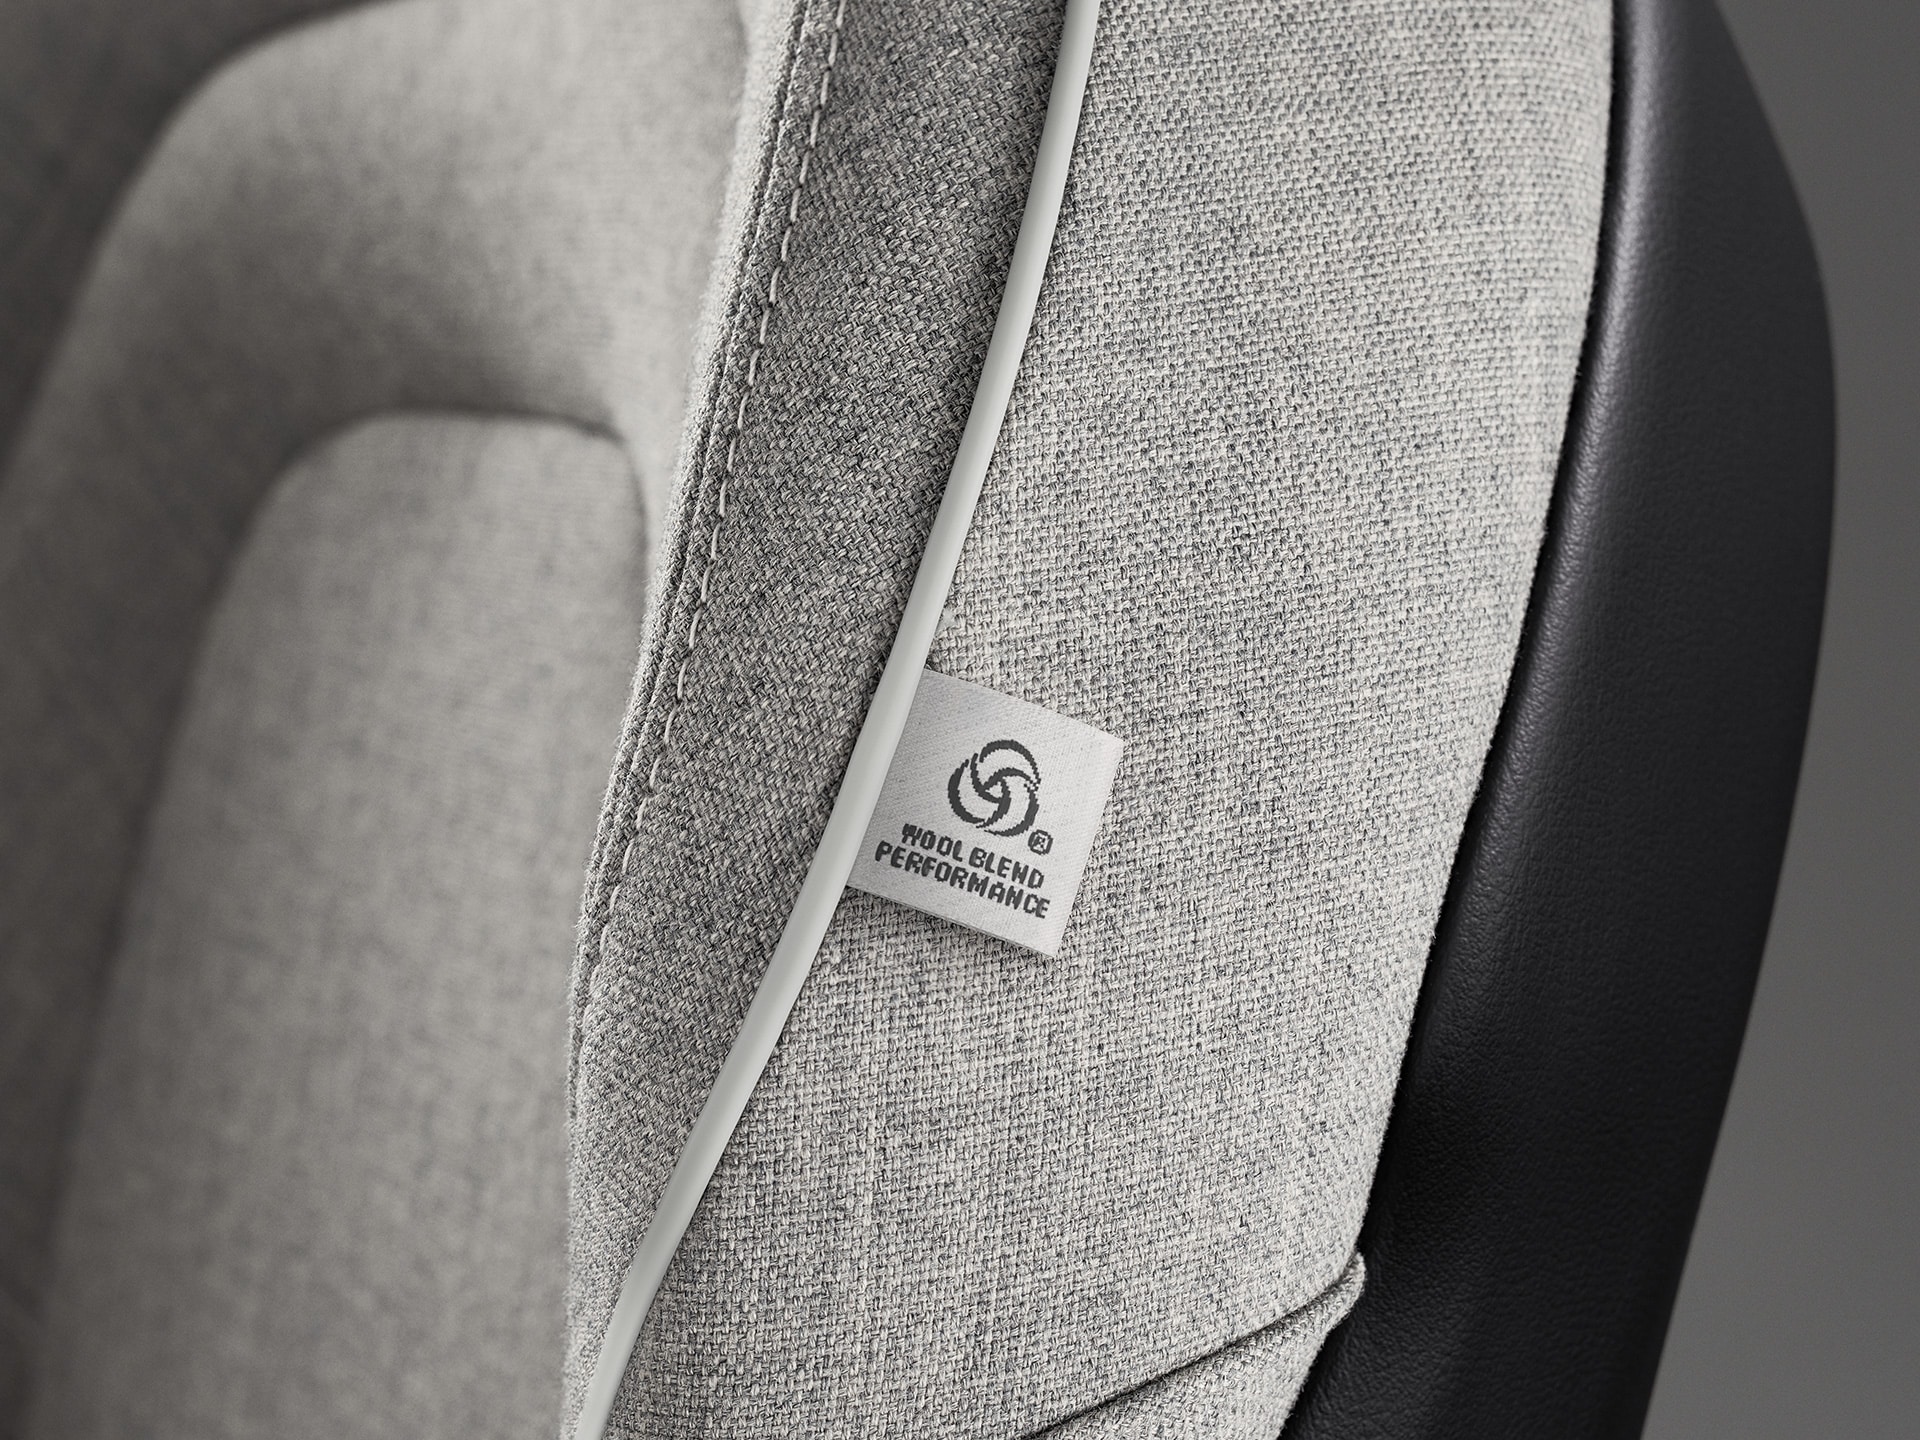 Interjööri lähivõte nahavabadest villasegustest istmetest Volvo XC60 Recharge'is.